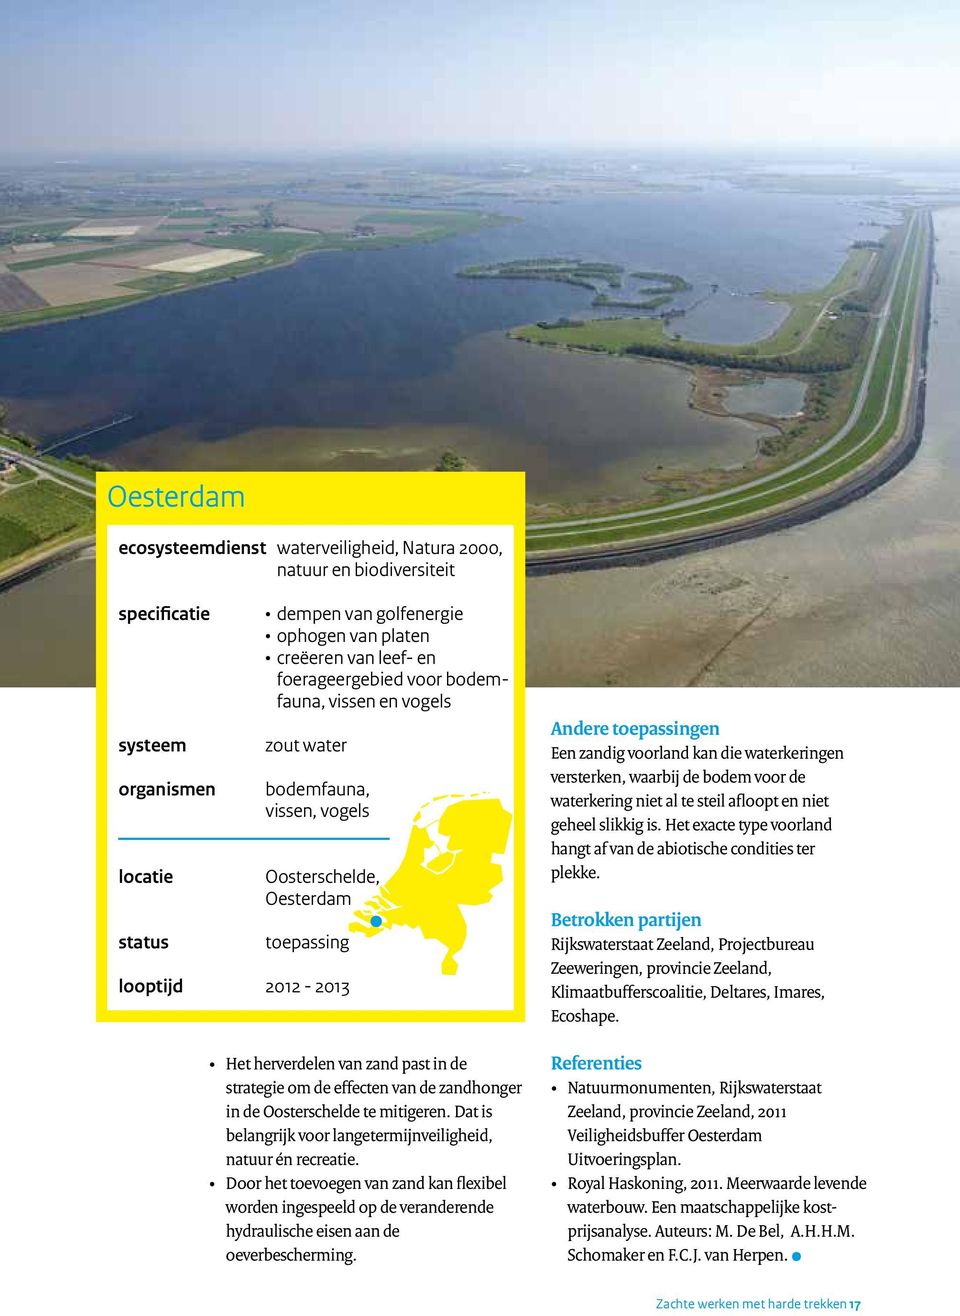 effecten van de zandhonger in de Oosterschelde te mitigeren. Dat is belangrijk voor langetermijnveiligheid, natuur én recreatie.